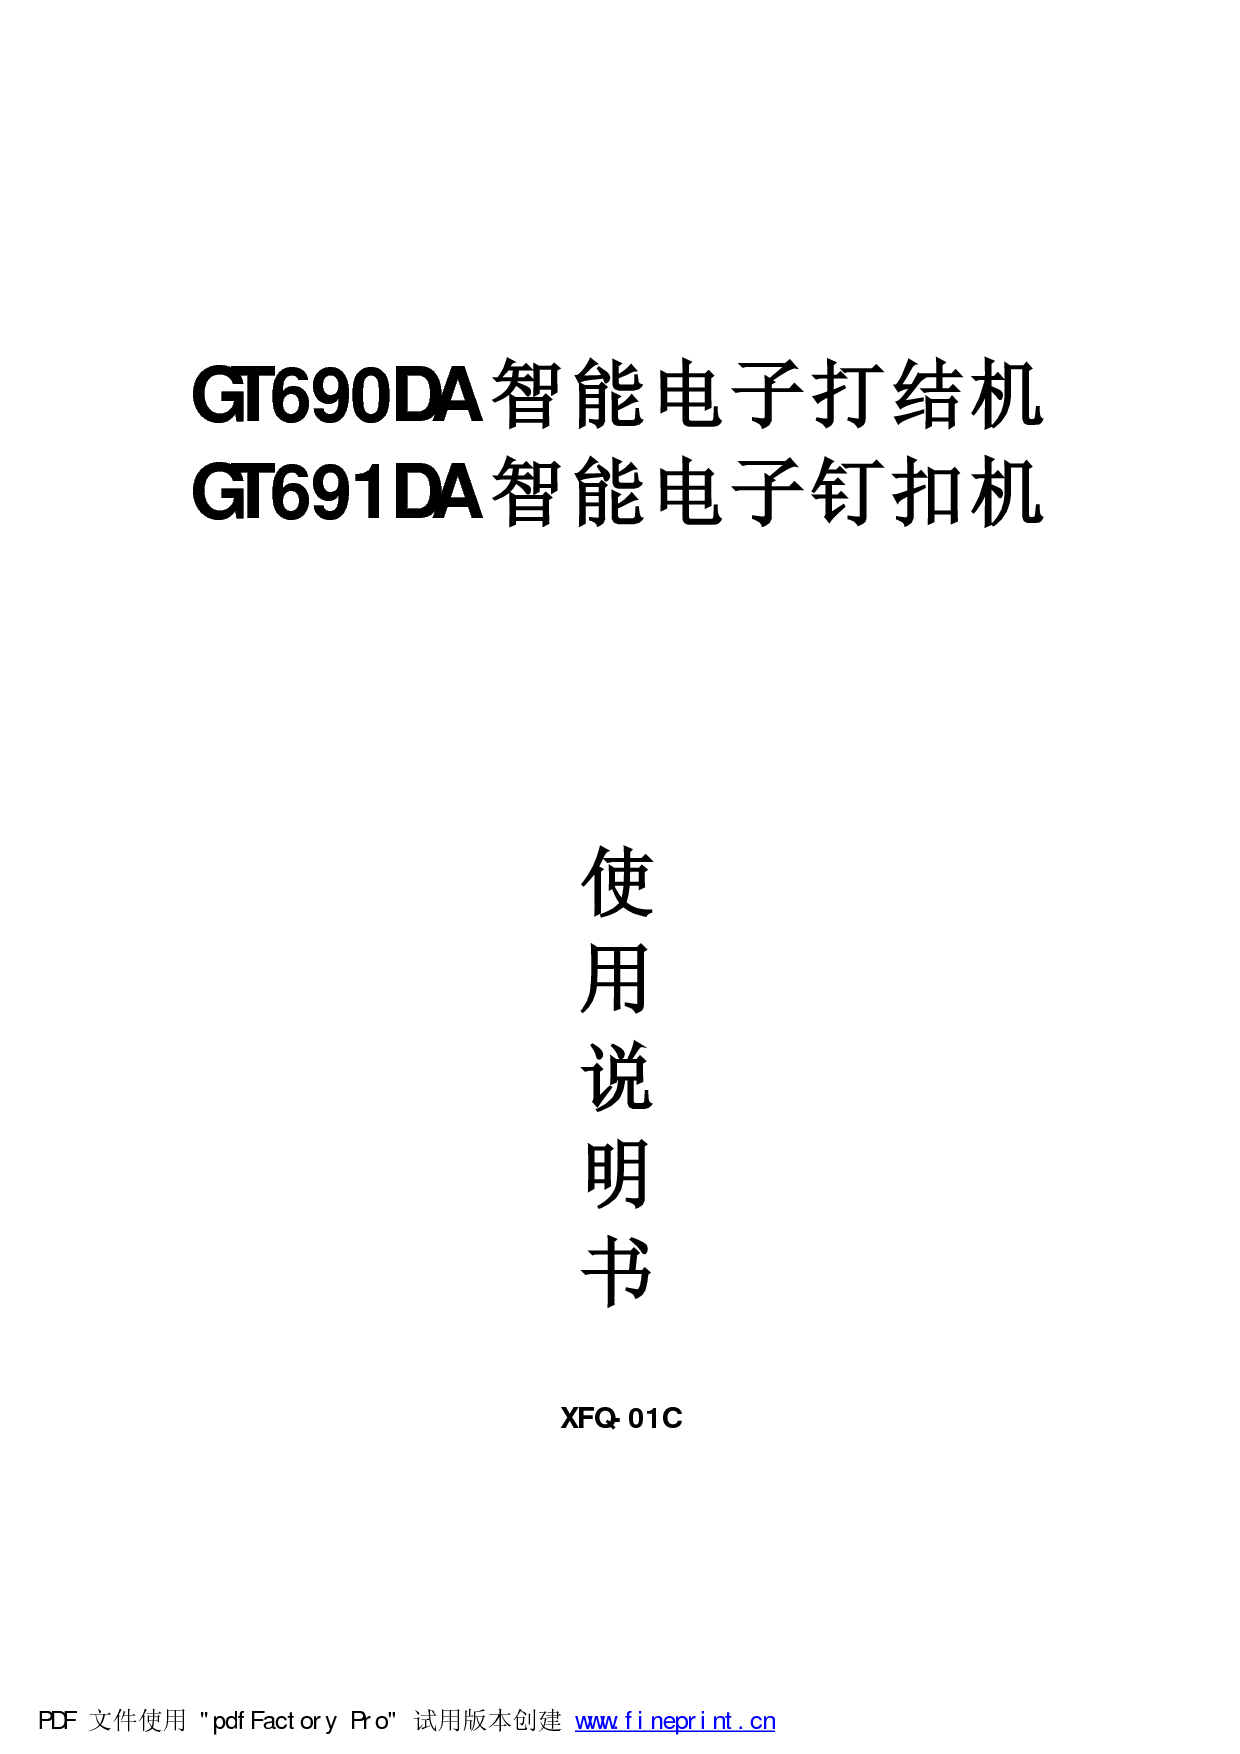 标准 Typical GT690DA, XFQ-01C 使用说明书 封面